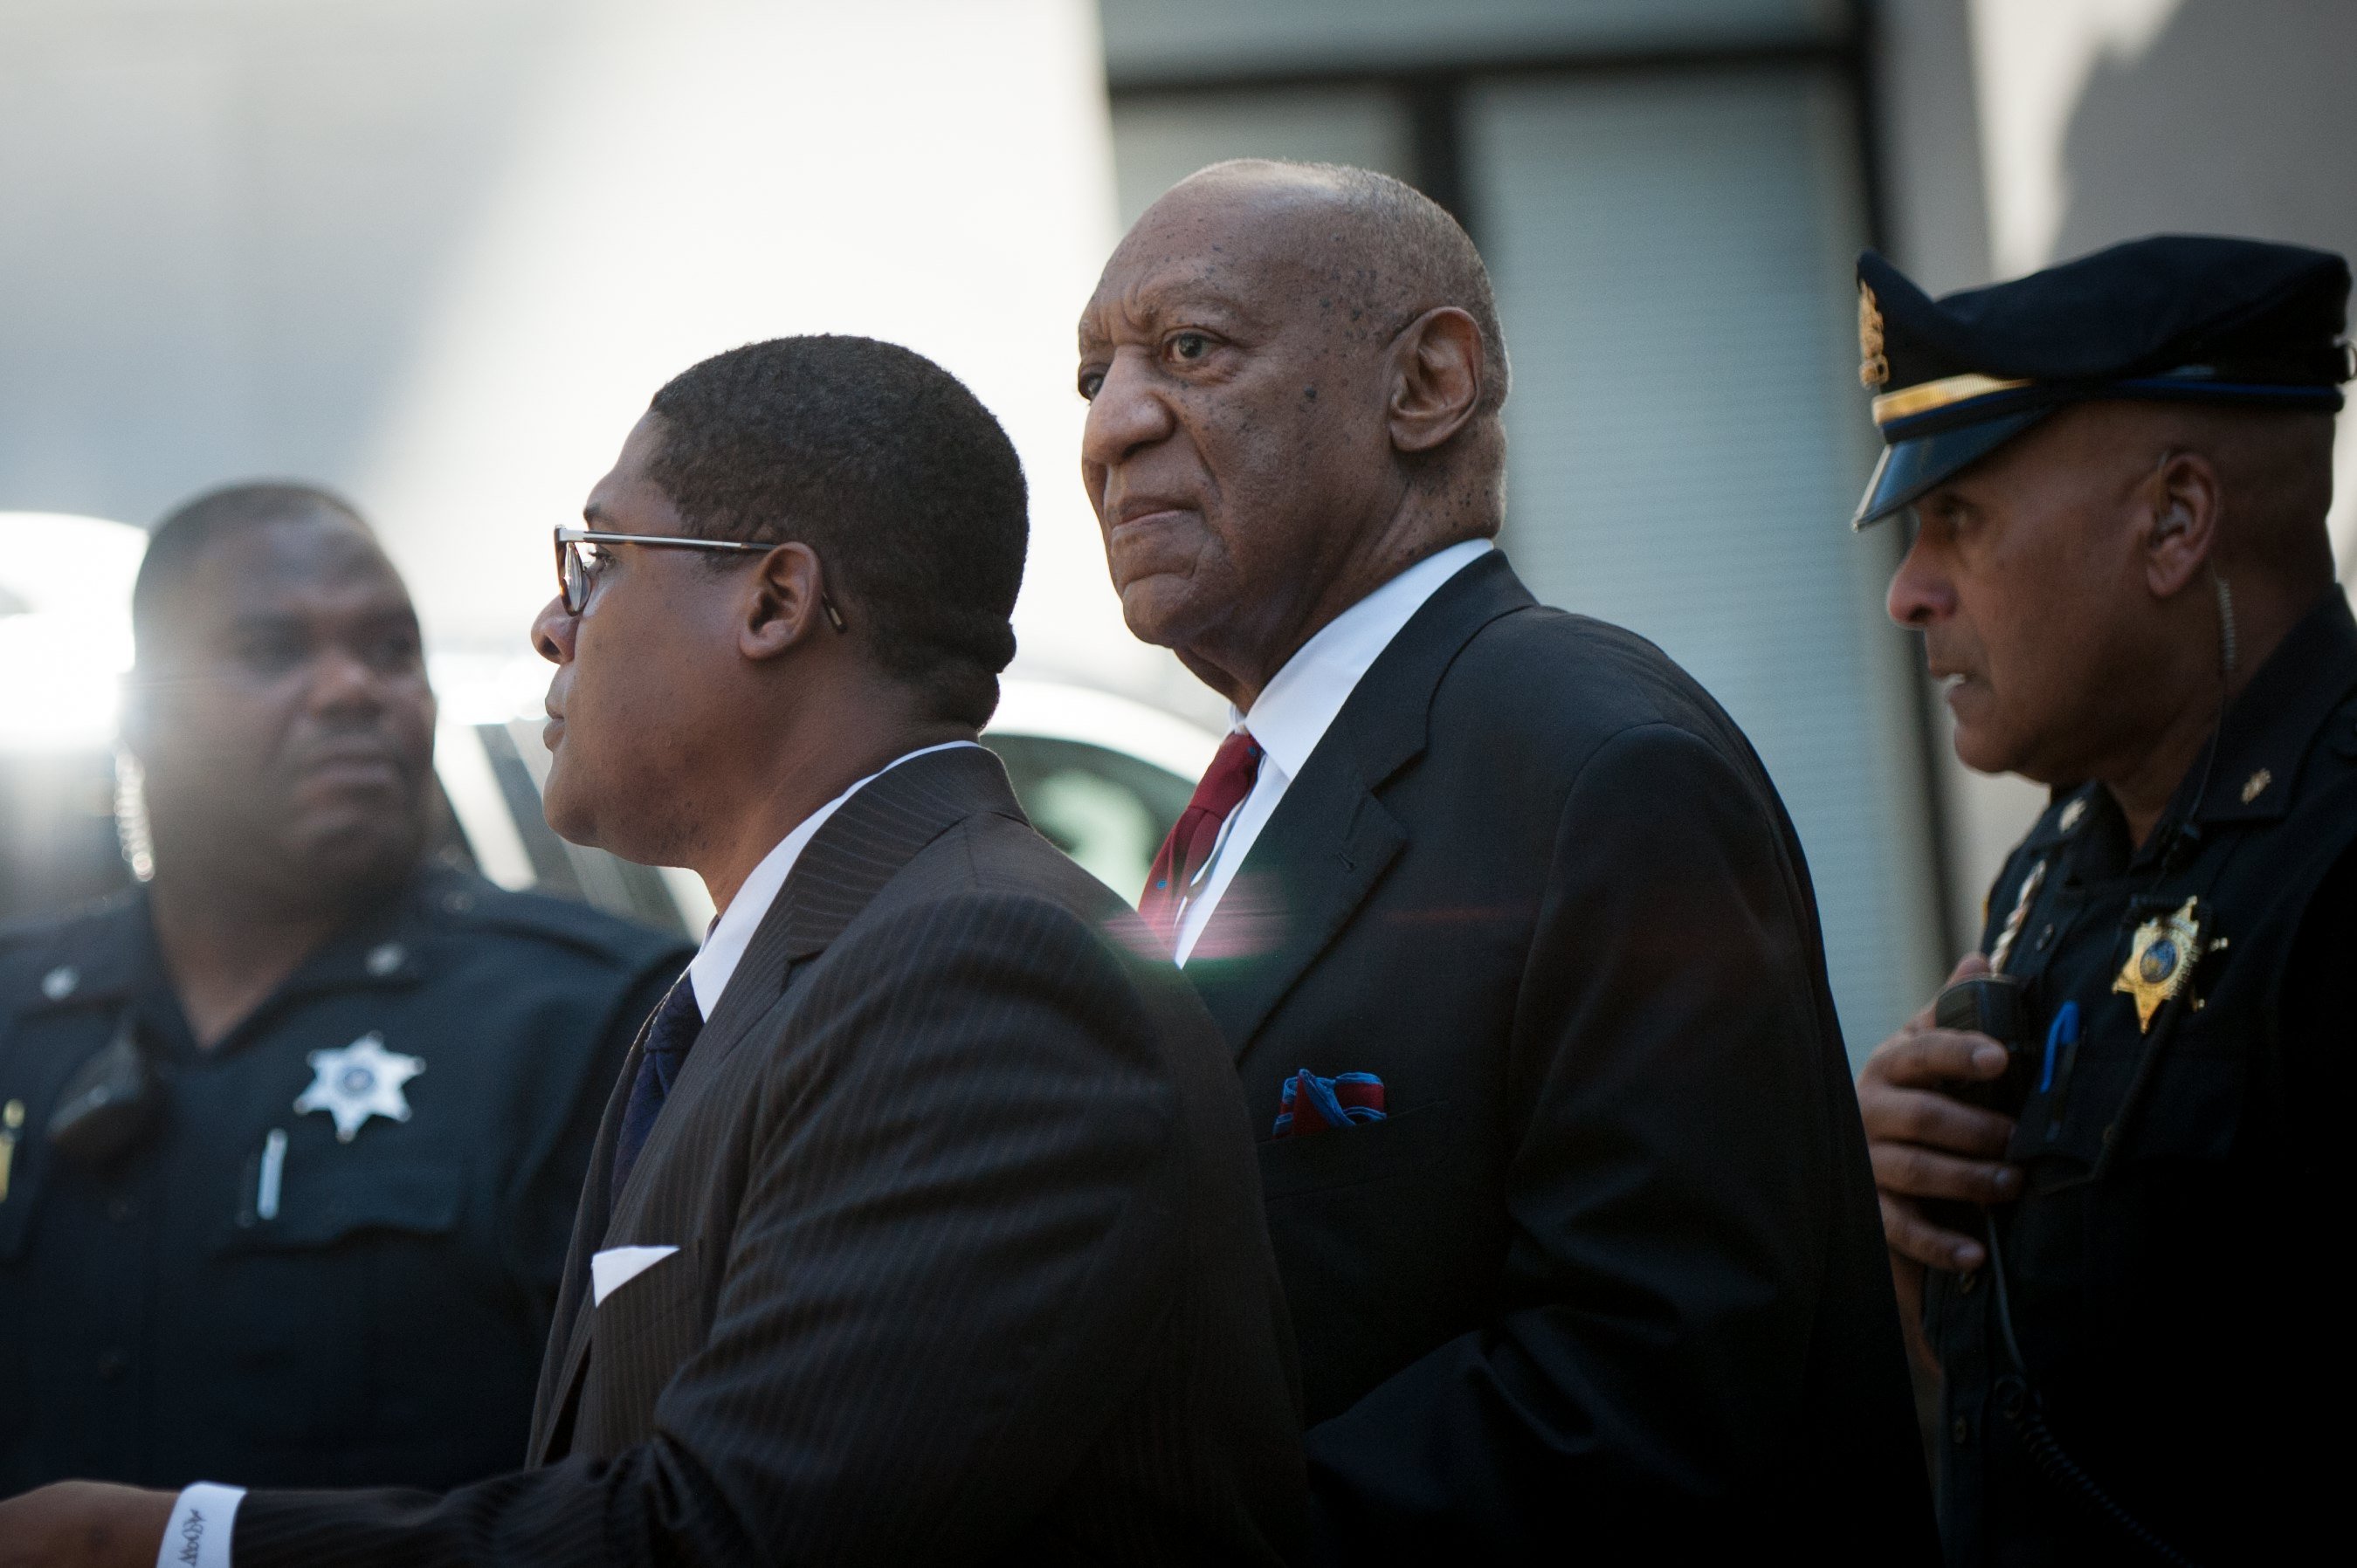 Ator norte-americano Bill Cosby condenado por abuso sexual